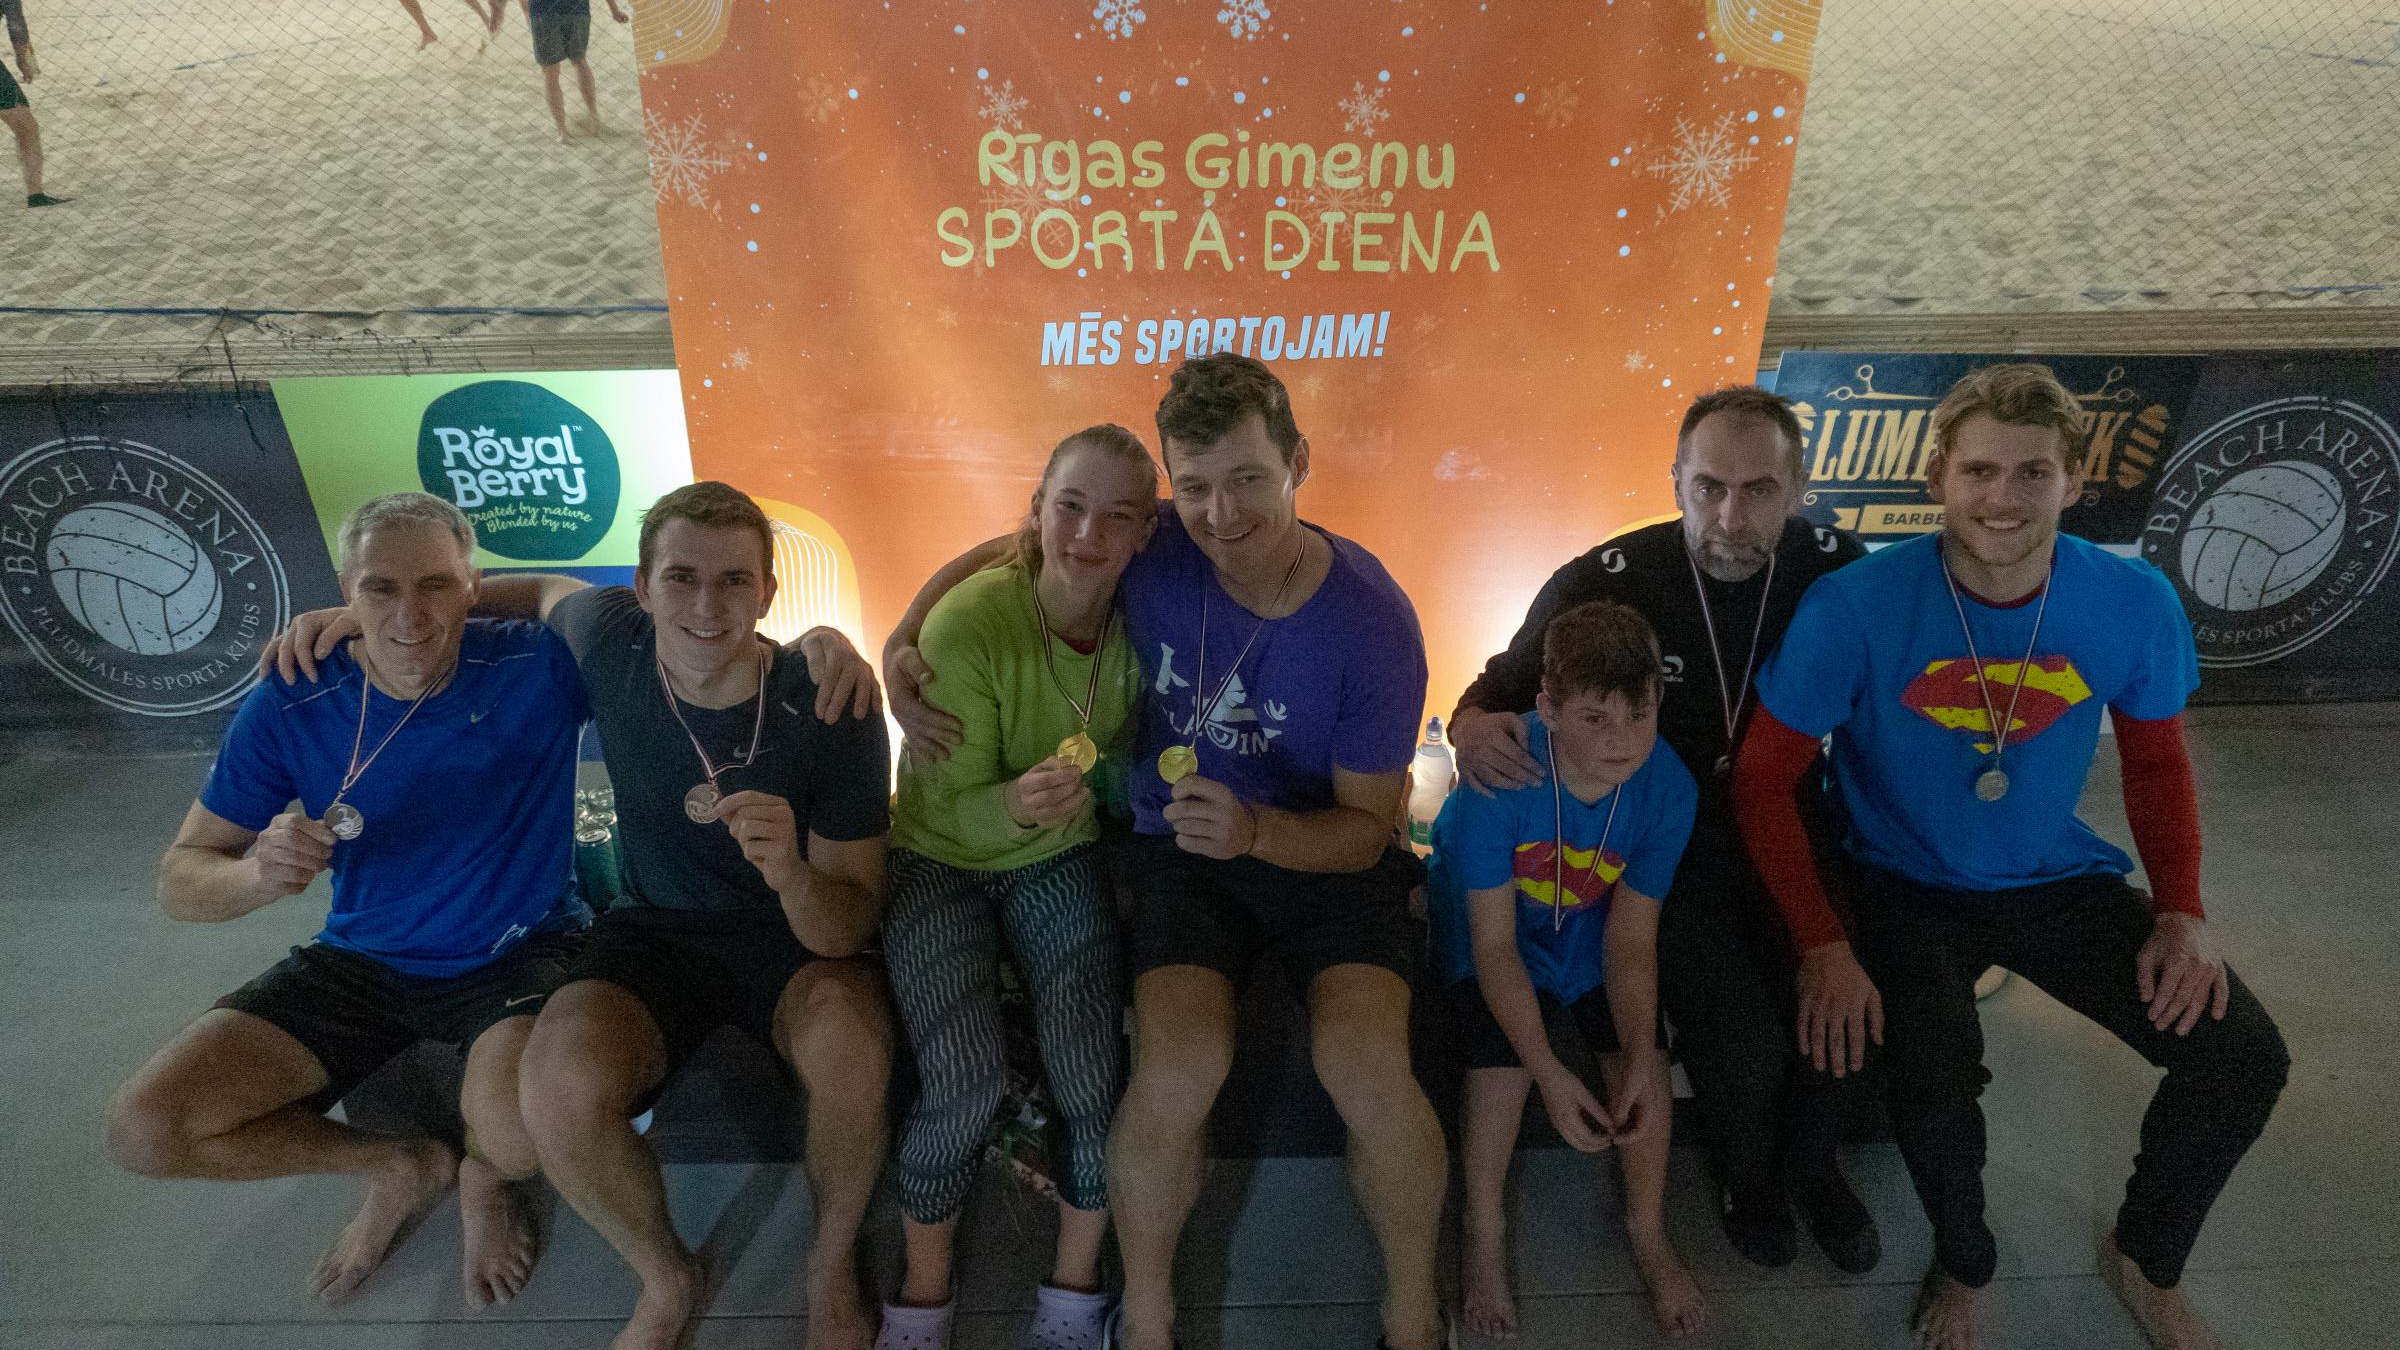 Norisinājusies Rīgas ģimeņu sporta diena – aktīvās atpūtas un kopā būšanas svētki